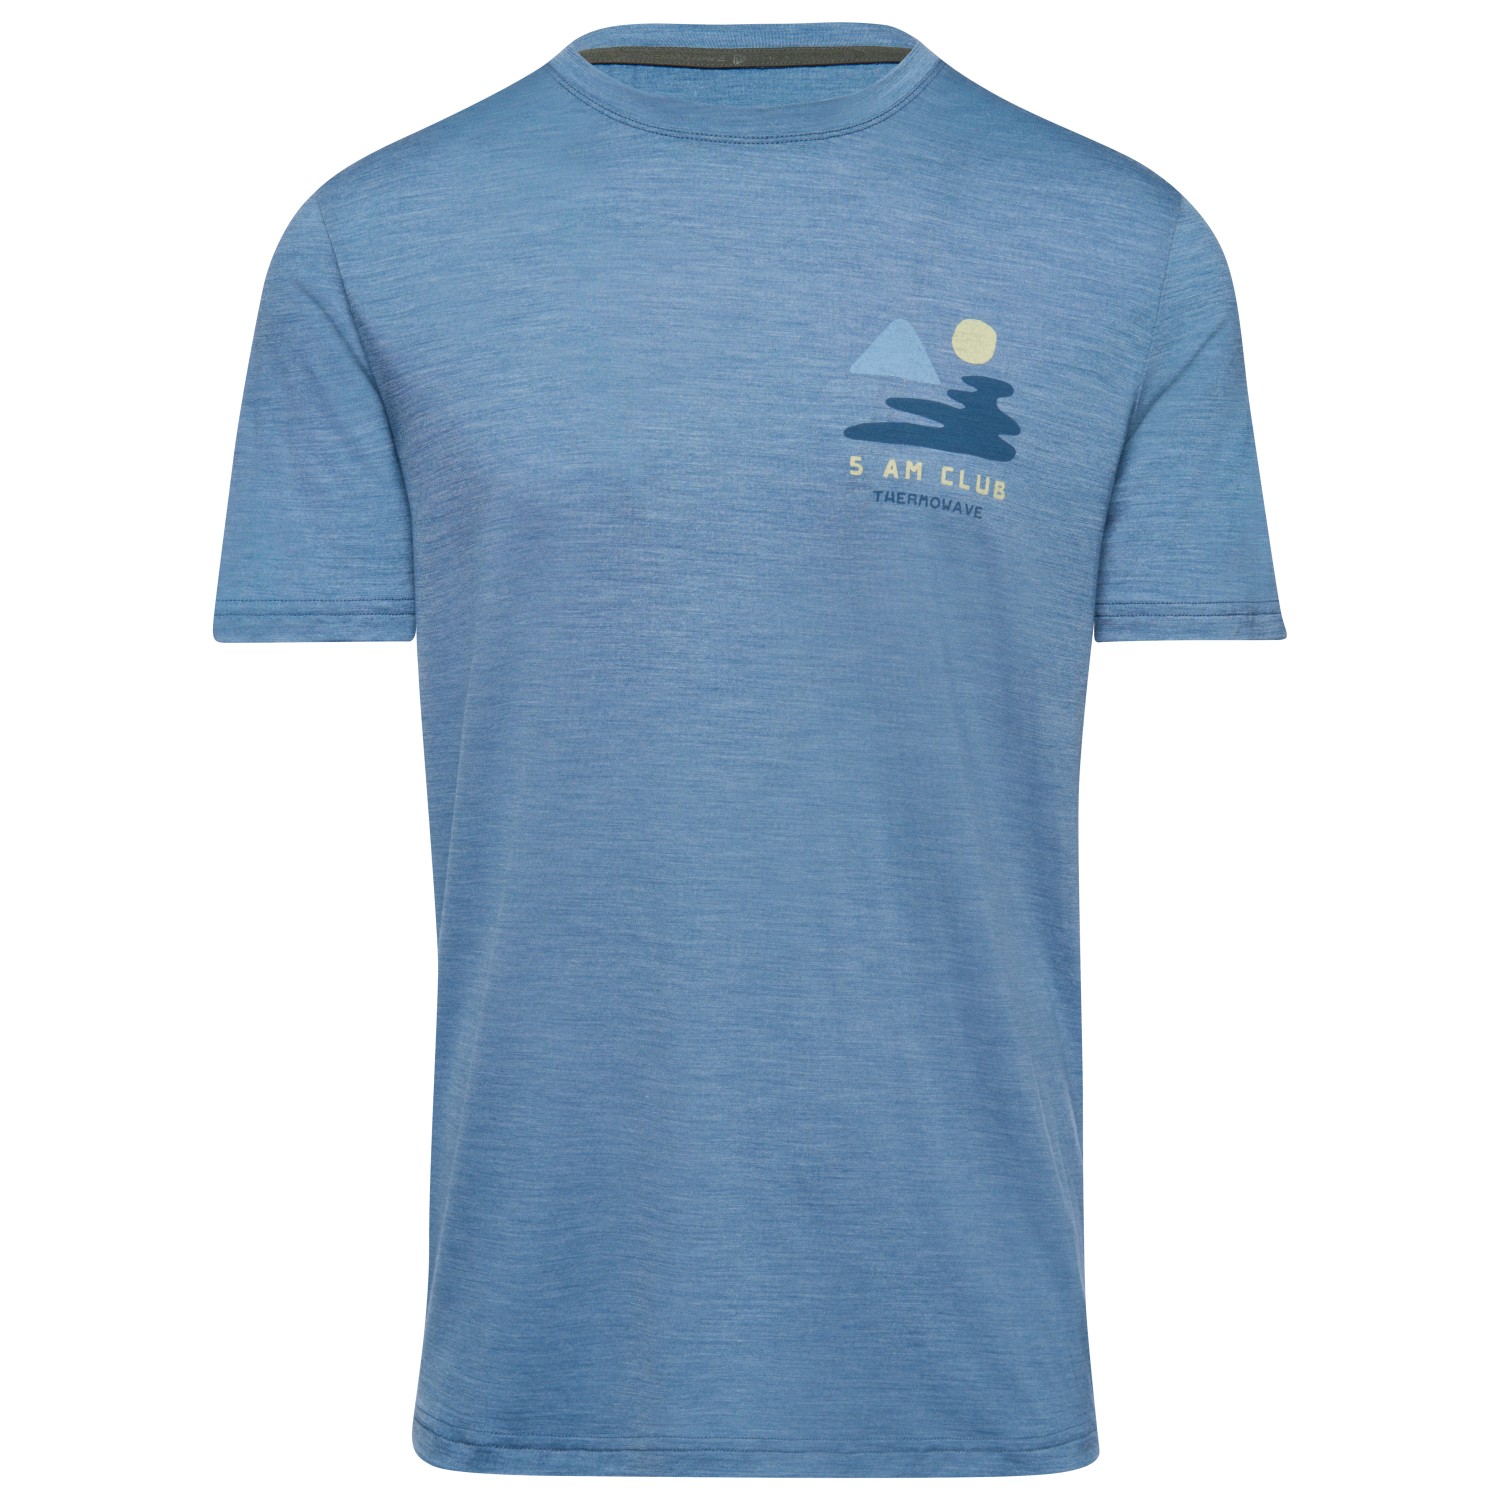 Рубашка из мериноса Thermowave Merino Cooler Trulite T Shirt 5AM Club, цвет Mountain Spring Melange